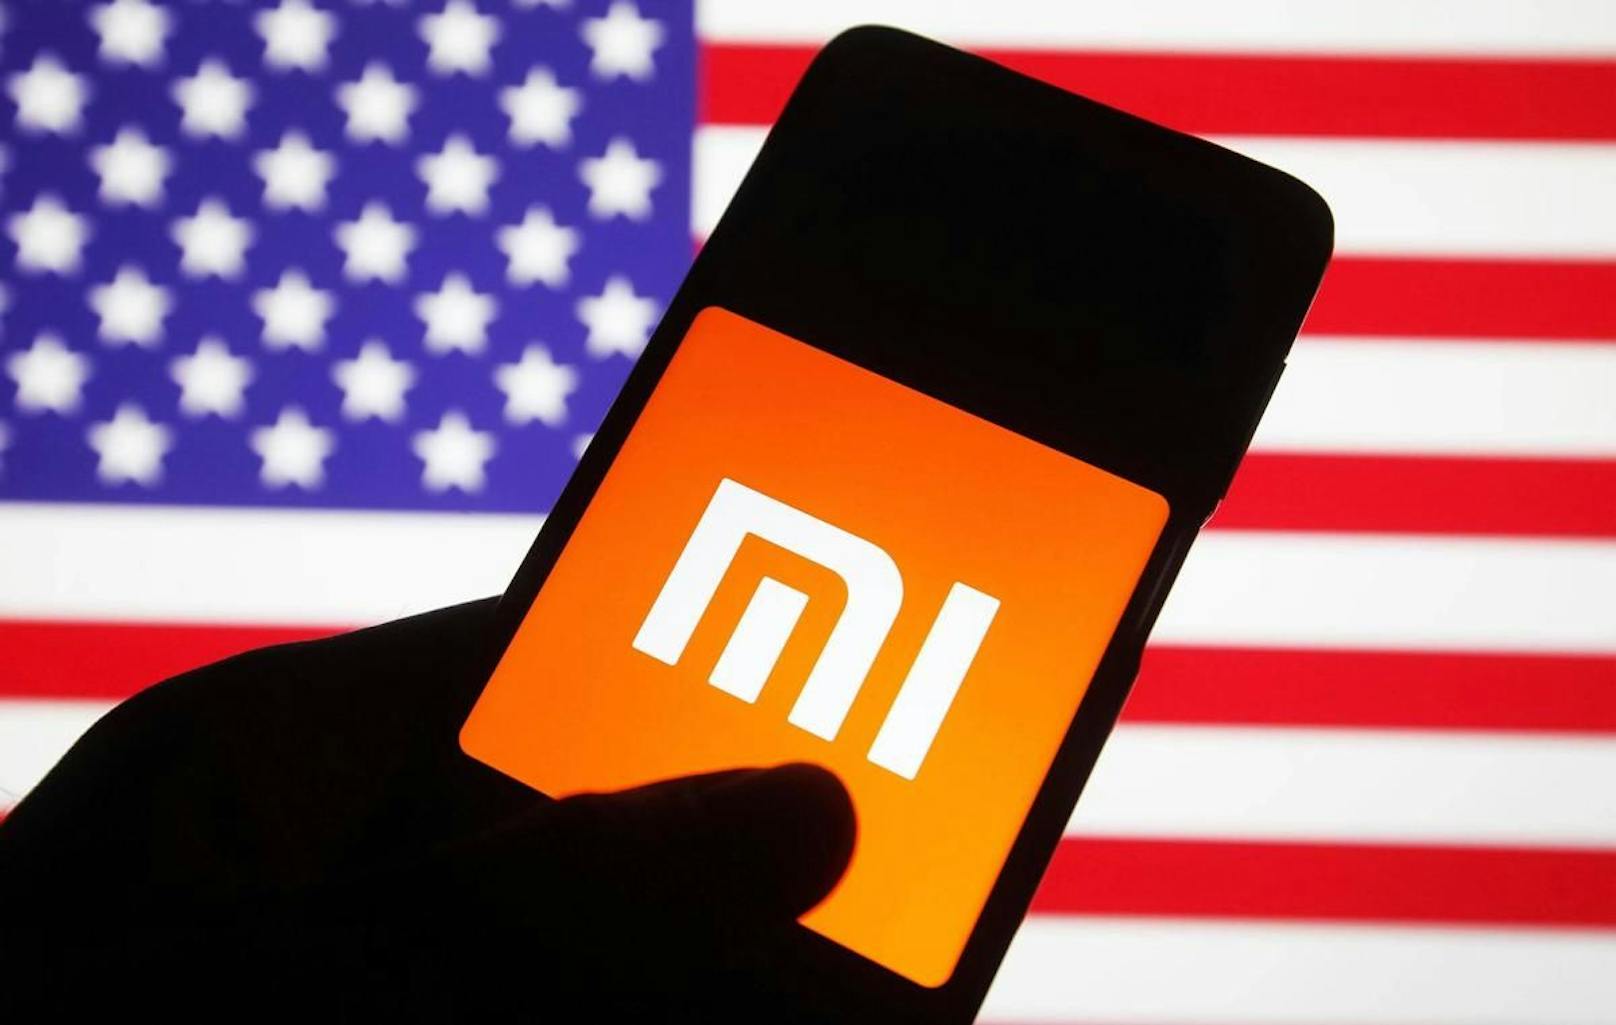 Seit Mitte Jänner 2021 ist Xiaomi, der drittgrößte Smartphone-Hersteller der Welt, auf einer schwarzen Liste der USA. Die USA werfen der Firma vor, Verbindungen zum chinesischen Militär zu haben.